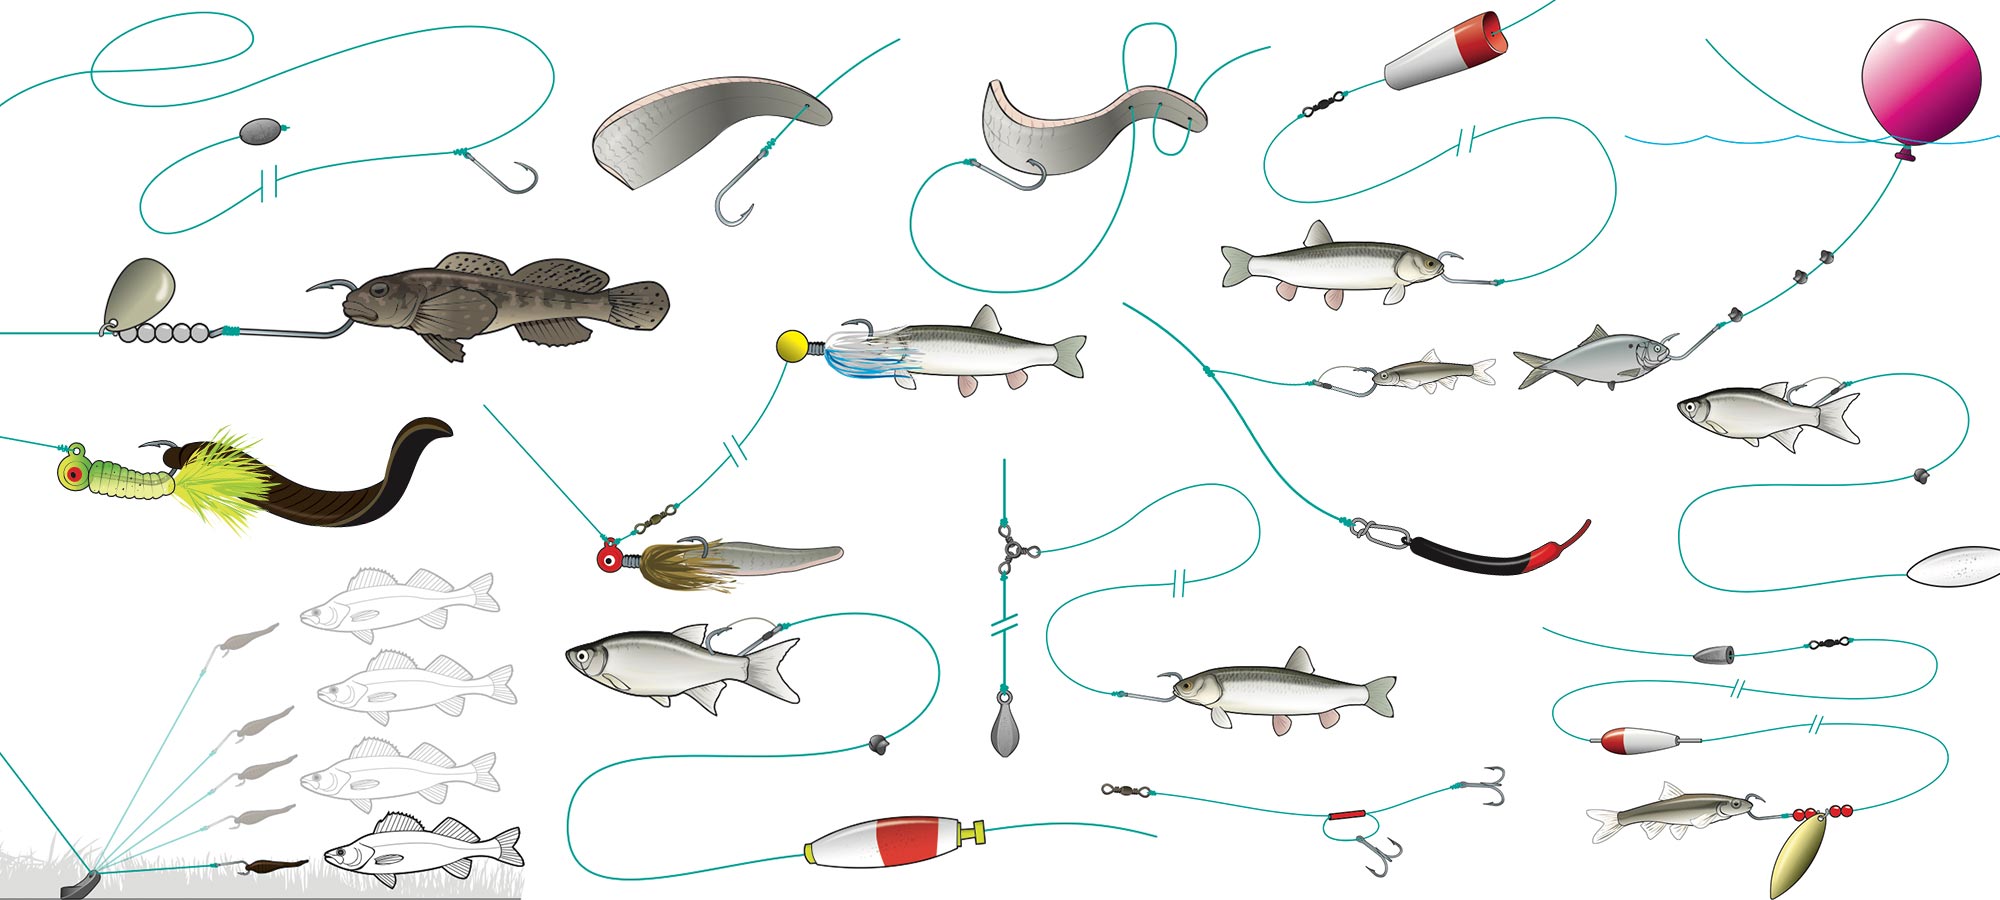 Beginner's Guide: Fishing Gear & Basic Fishing Hooks